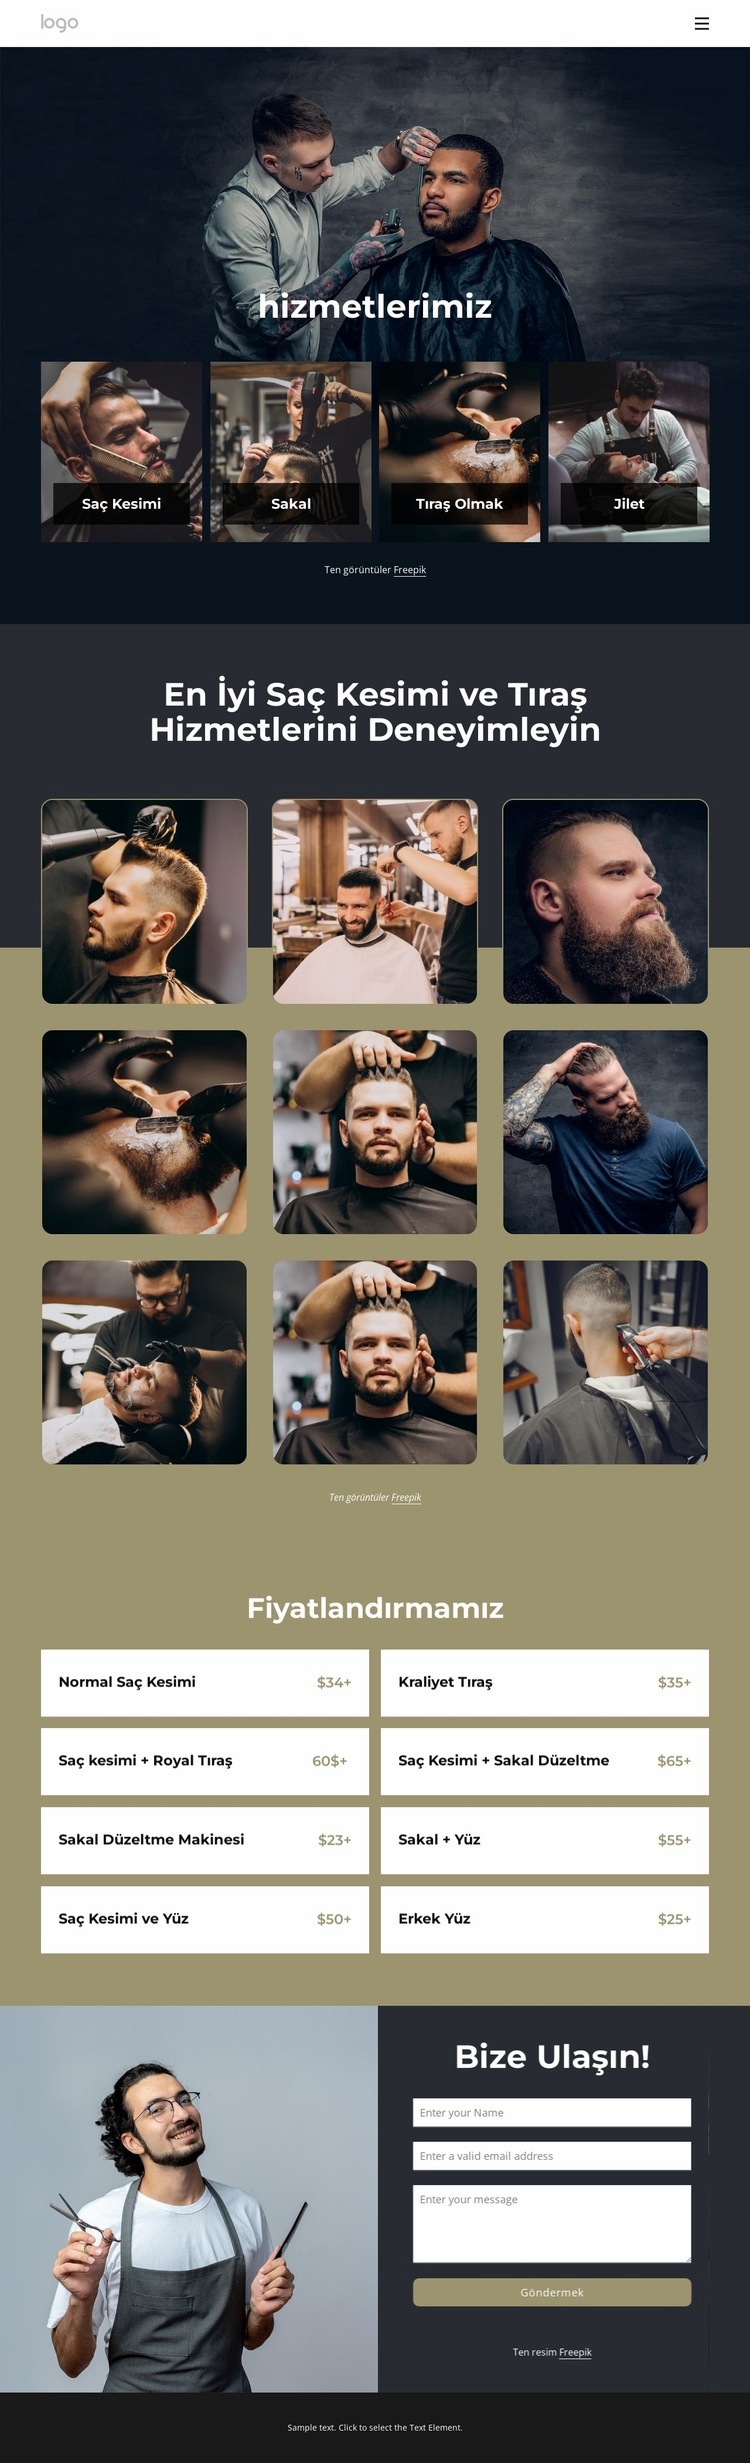 En iyi saç kesimi ve tıraş hizmetleri HTML5 Şablonu